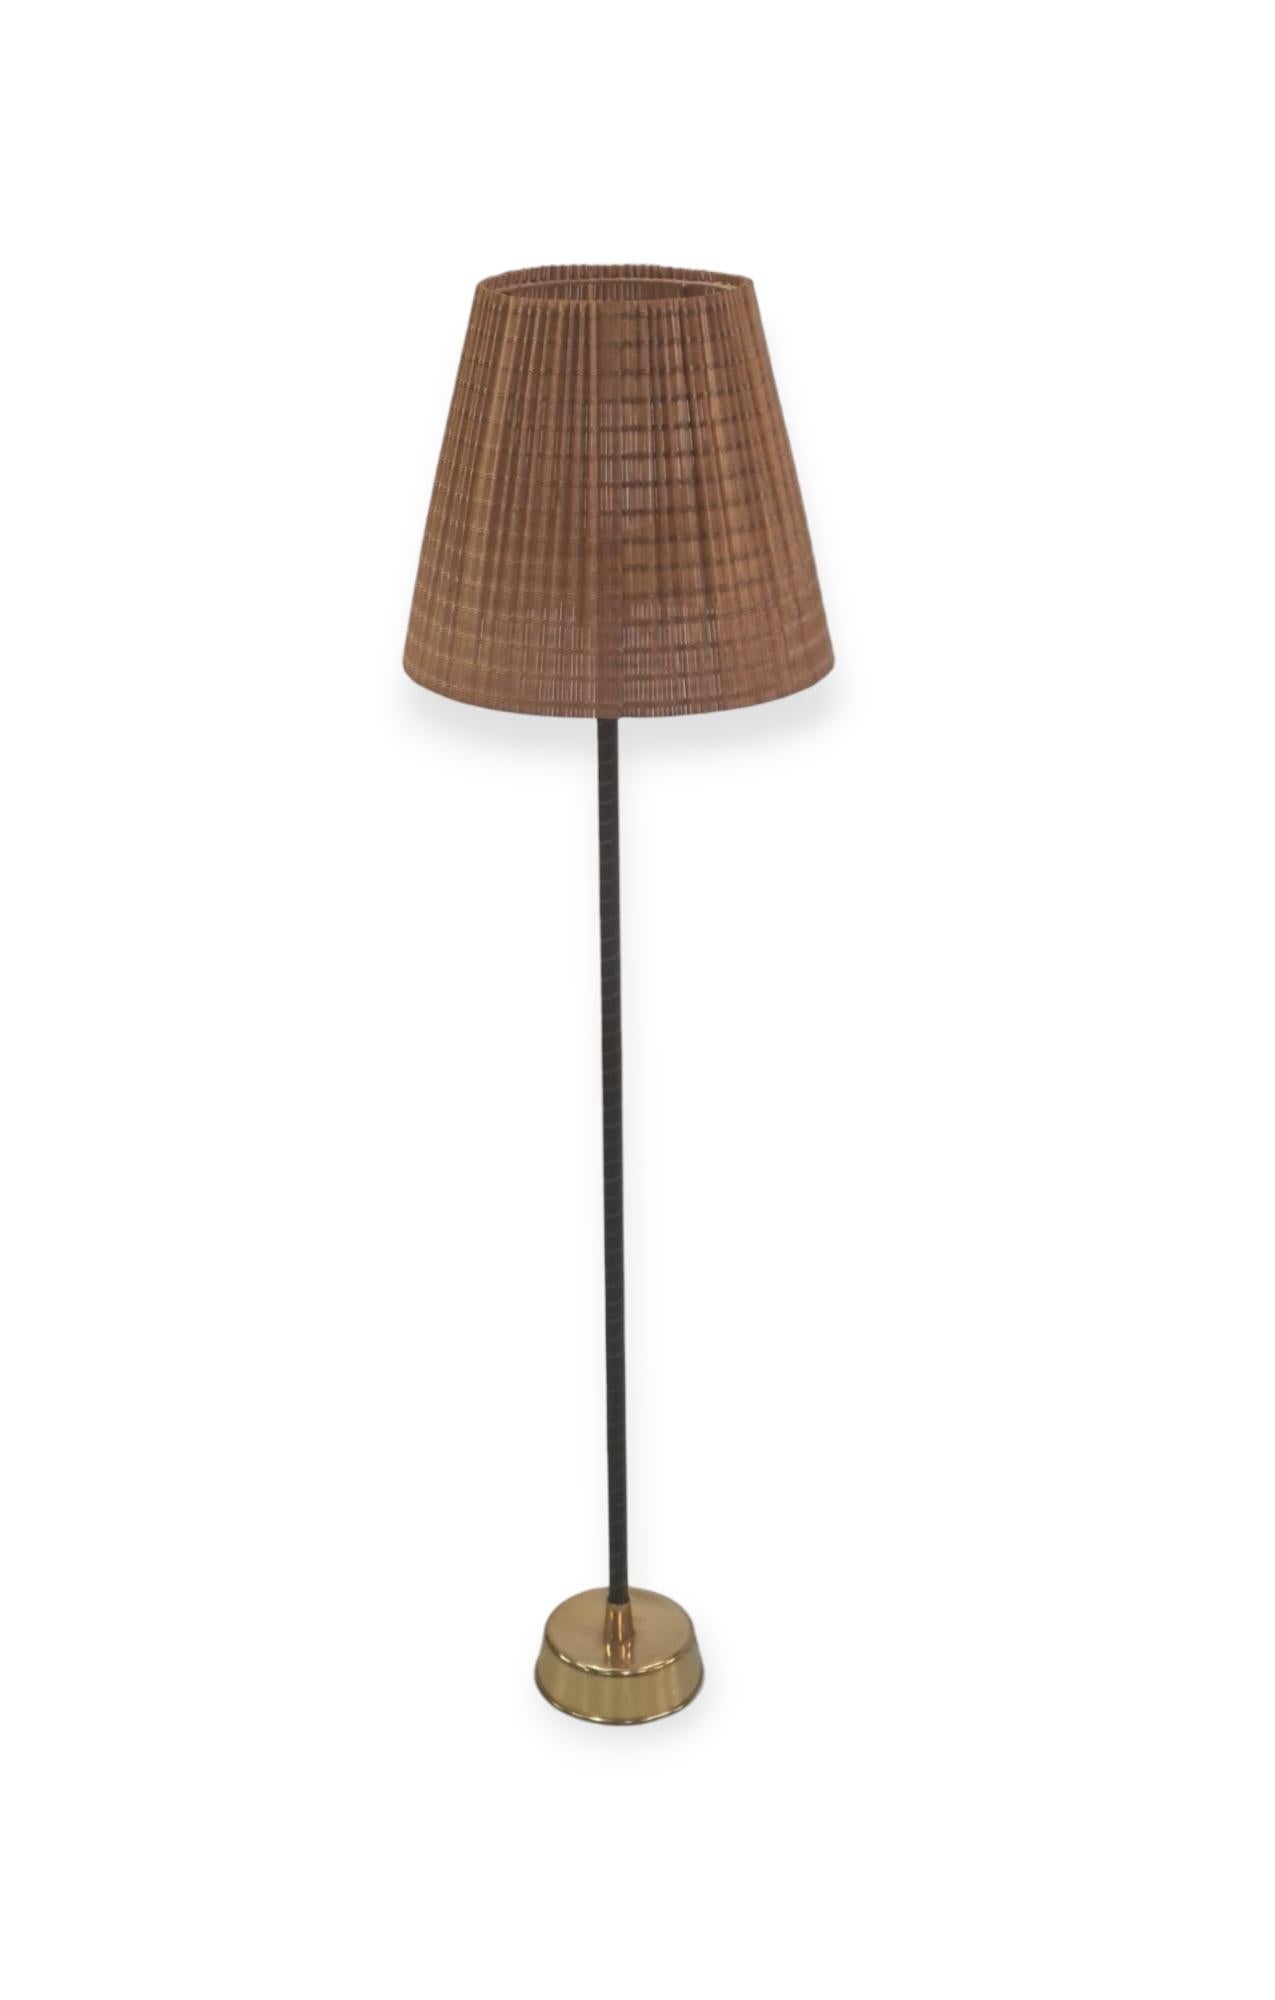 Finnish Lisa Johansson-Papé Ihanne Floor Lamp, Orno for Stockmann 1960s For Sale